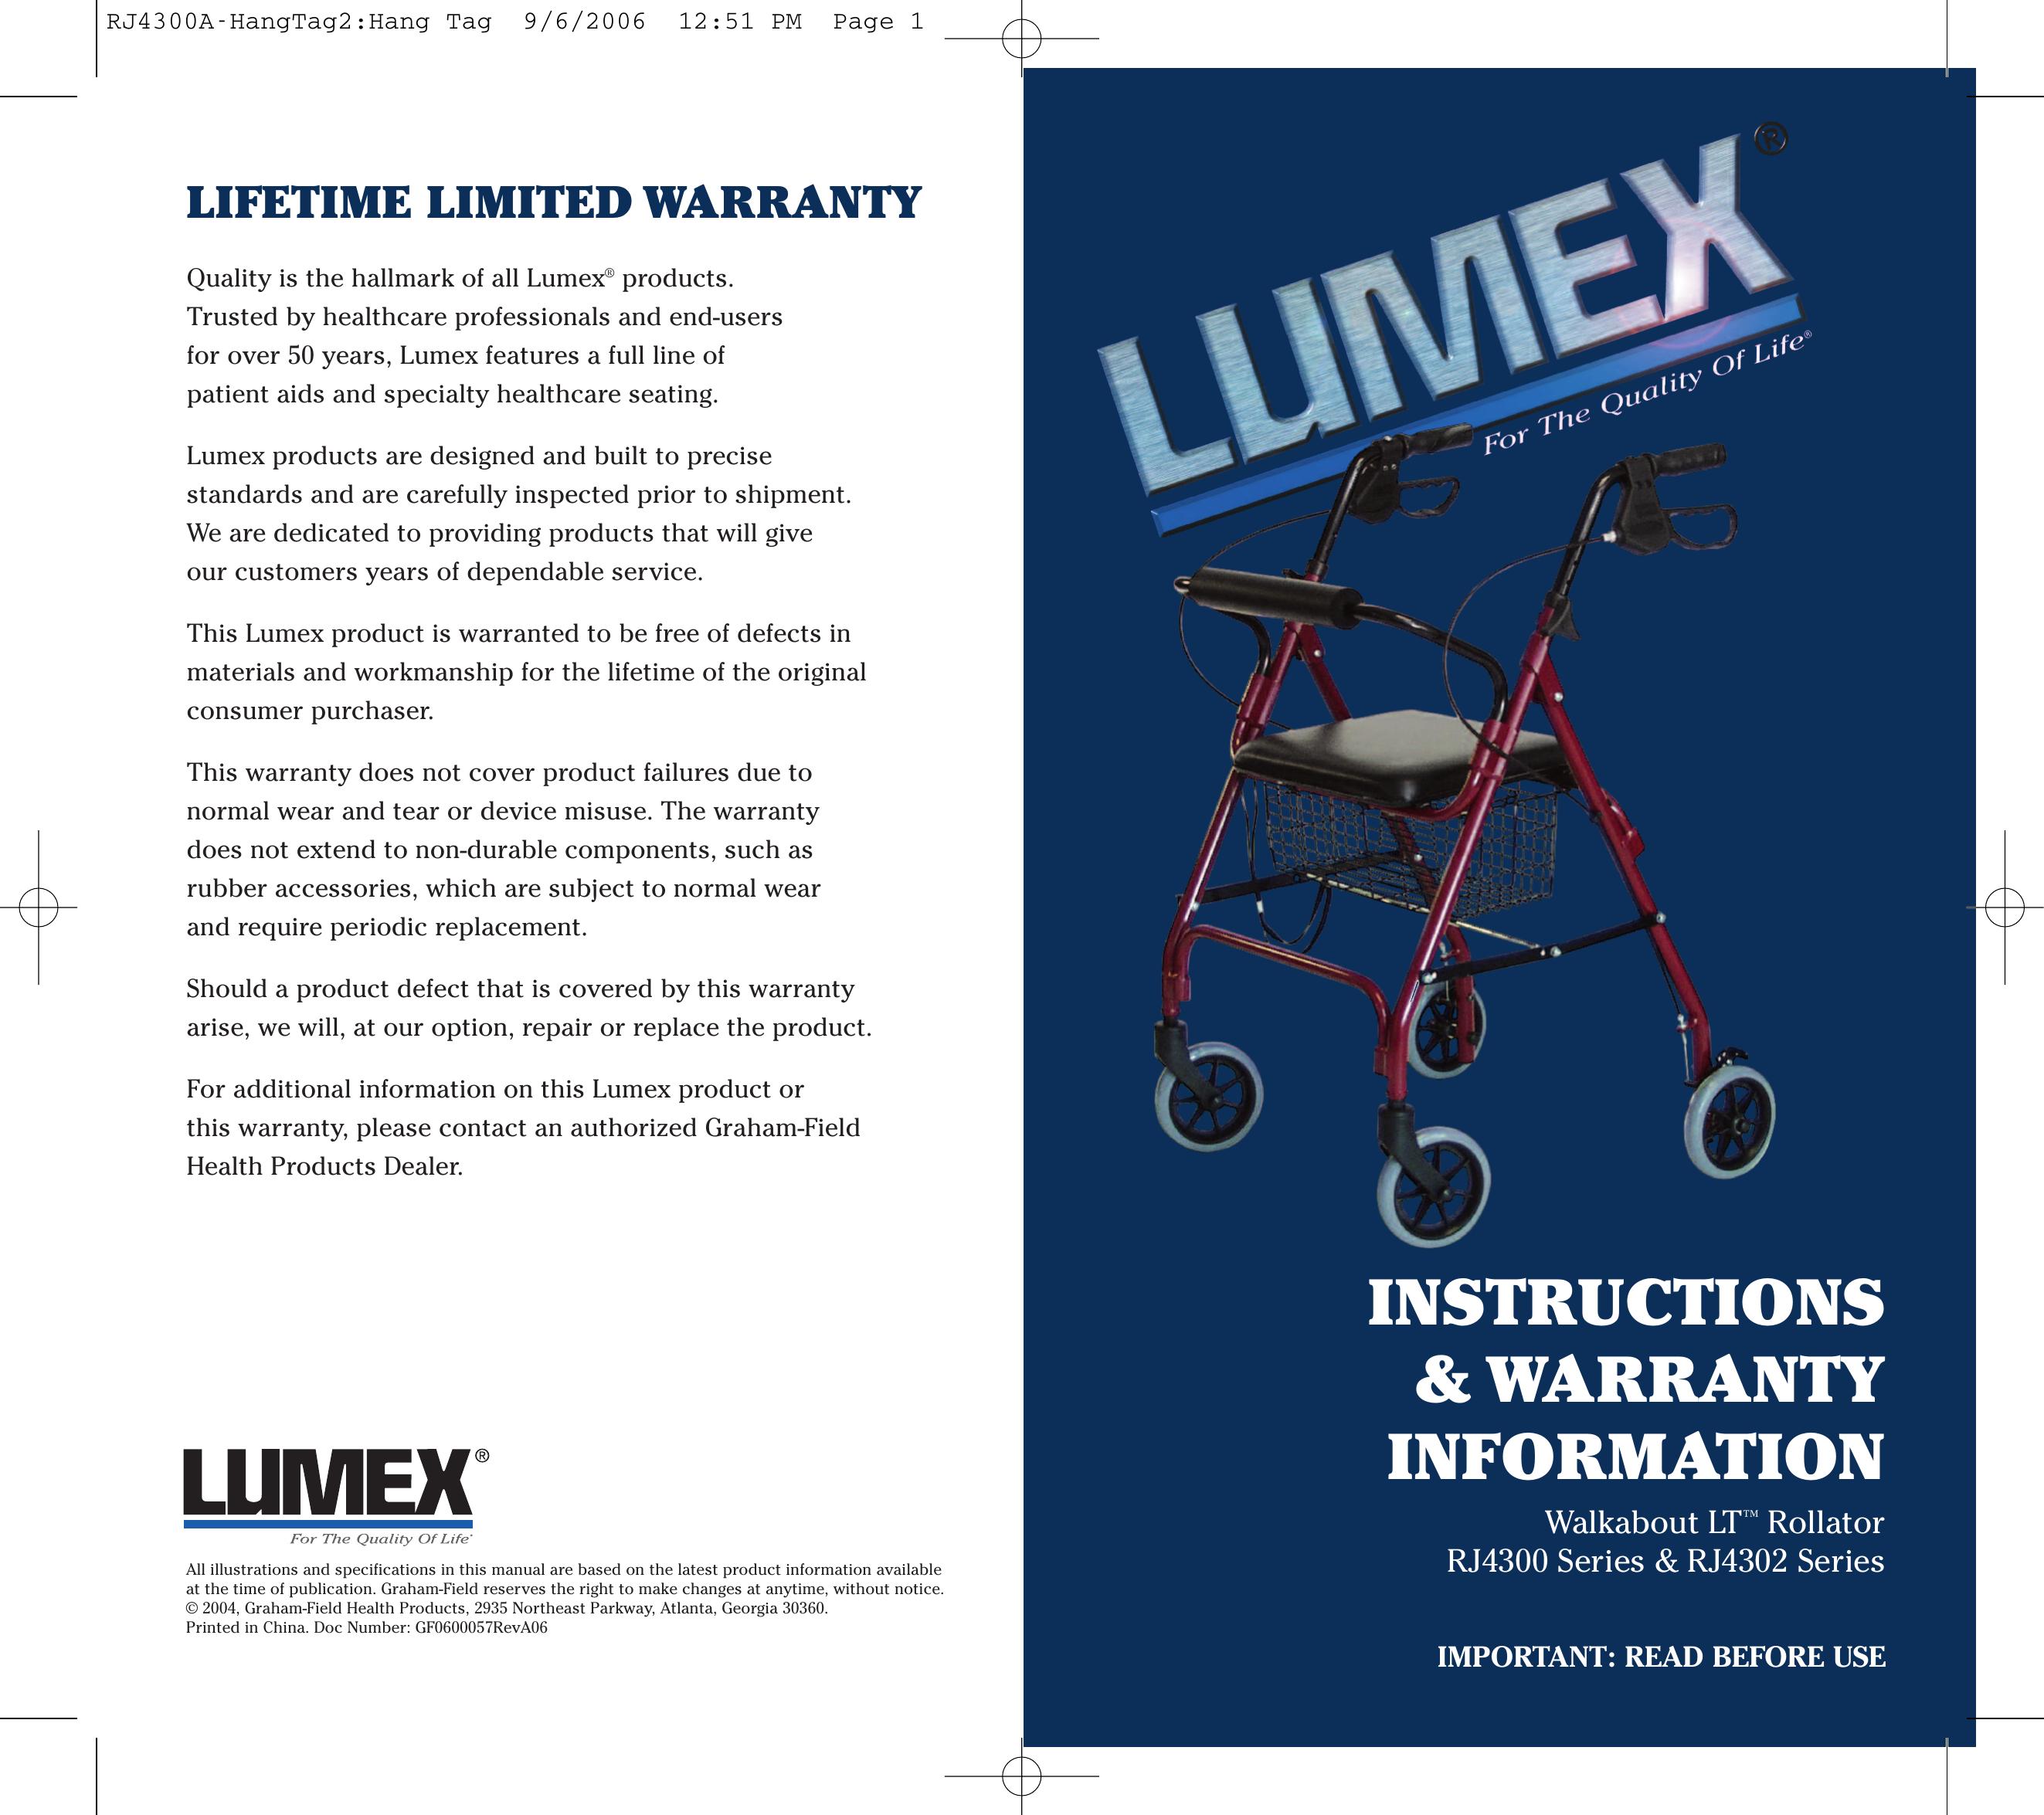 Lumex Syatems RJ4302 Mobility Aid User Manual